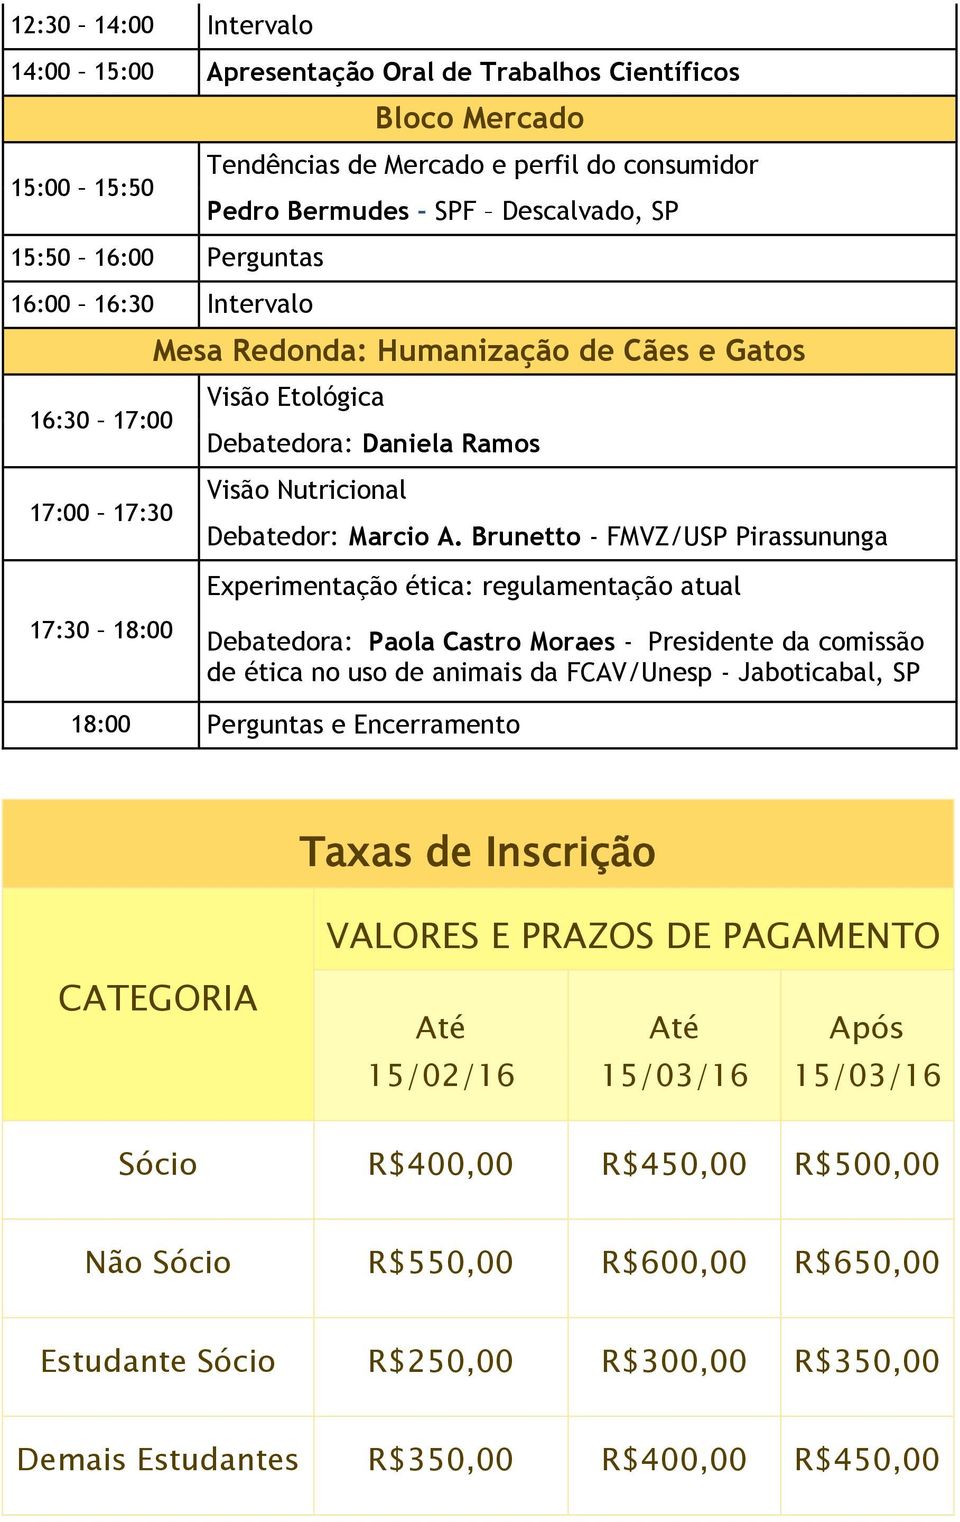 Brunetto - FMVZ/USP Pirassununga Experimentação ética: regulamentação atual Debatedora: Paola Castro Moraes - Presidente da comissão de ética no uso de animais da FCAV/Unesp - Jaboticabal, SP 18:00